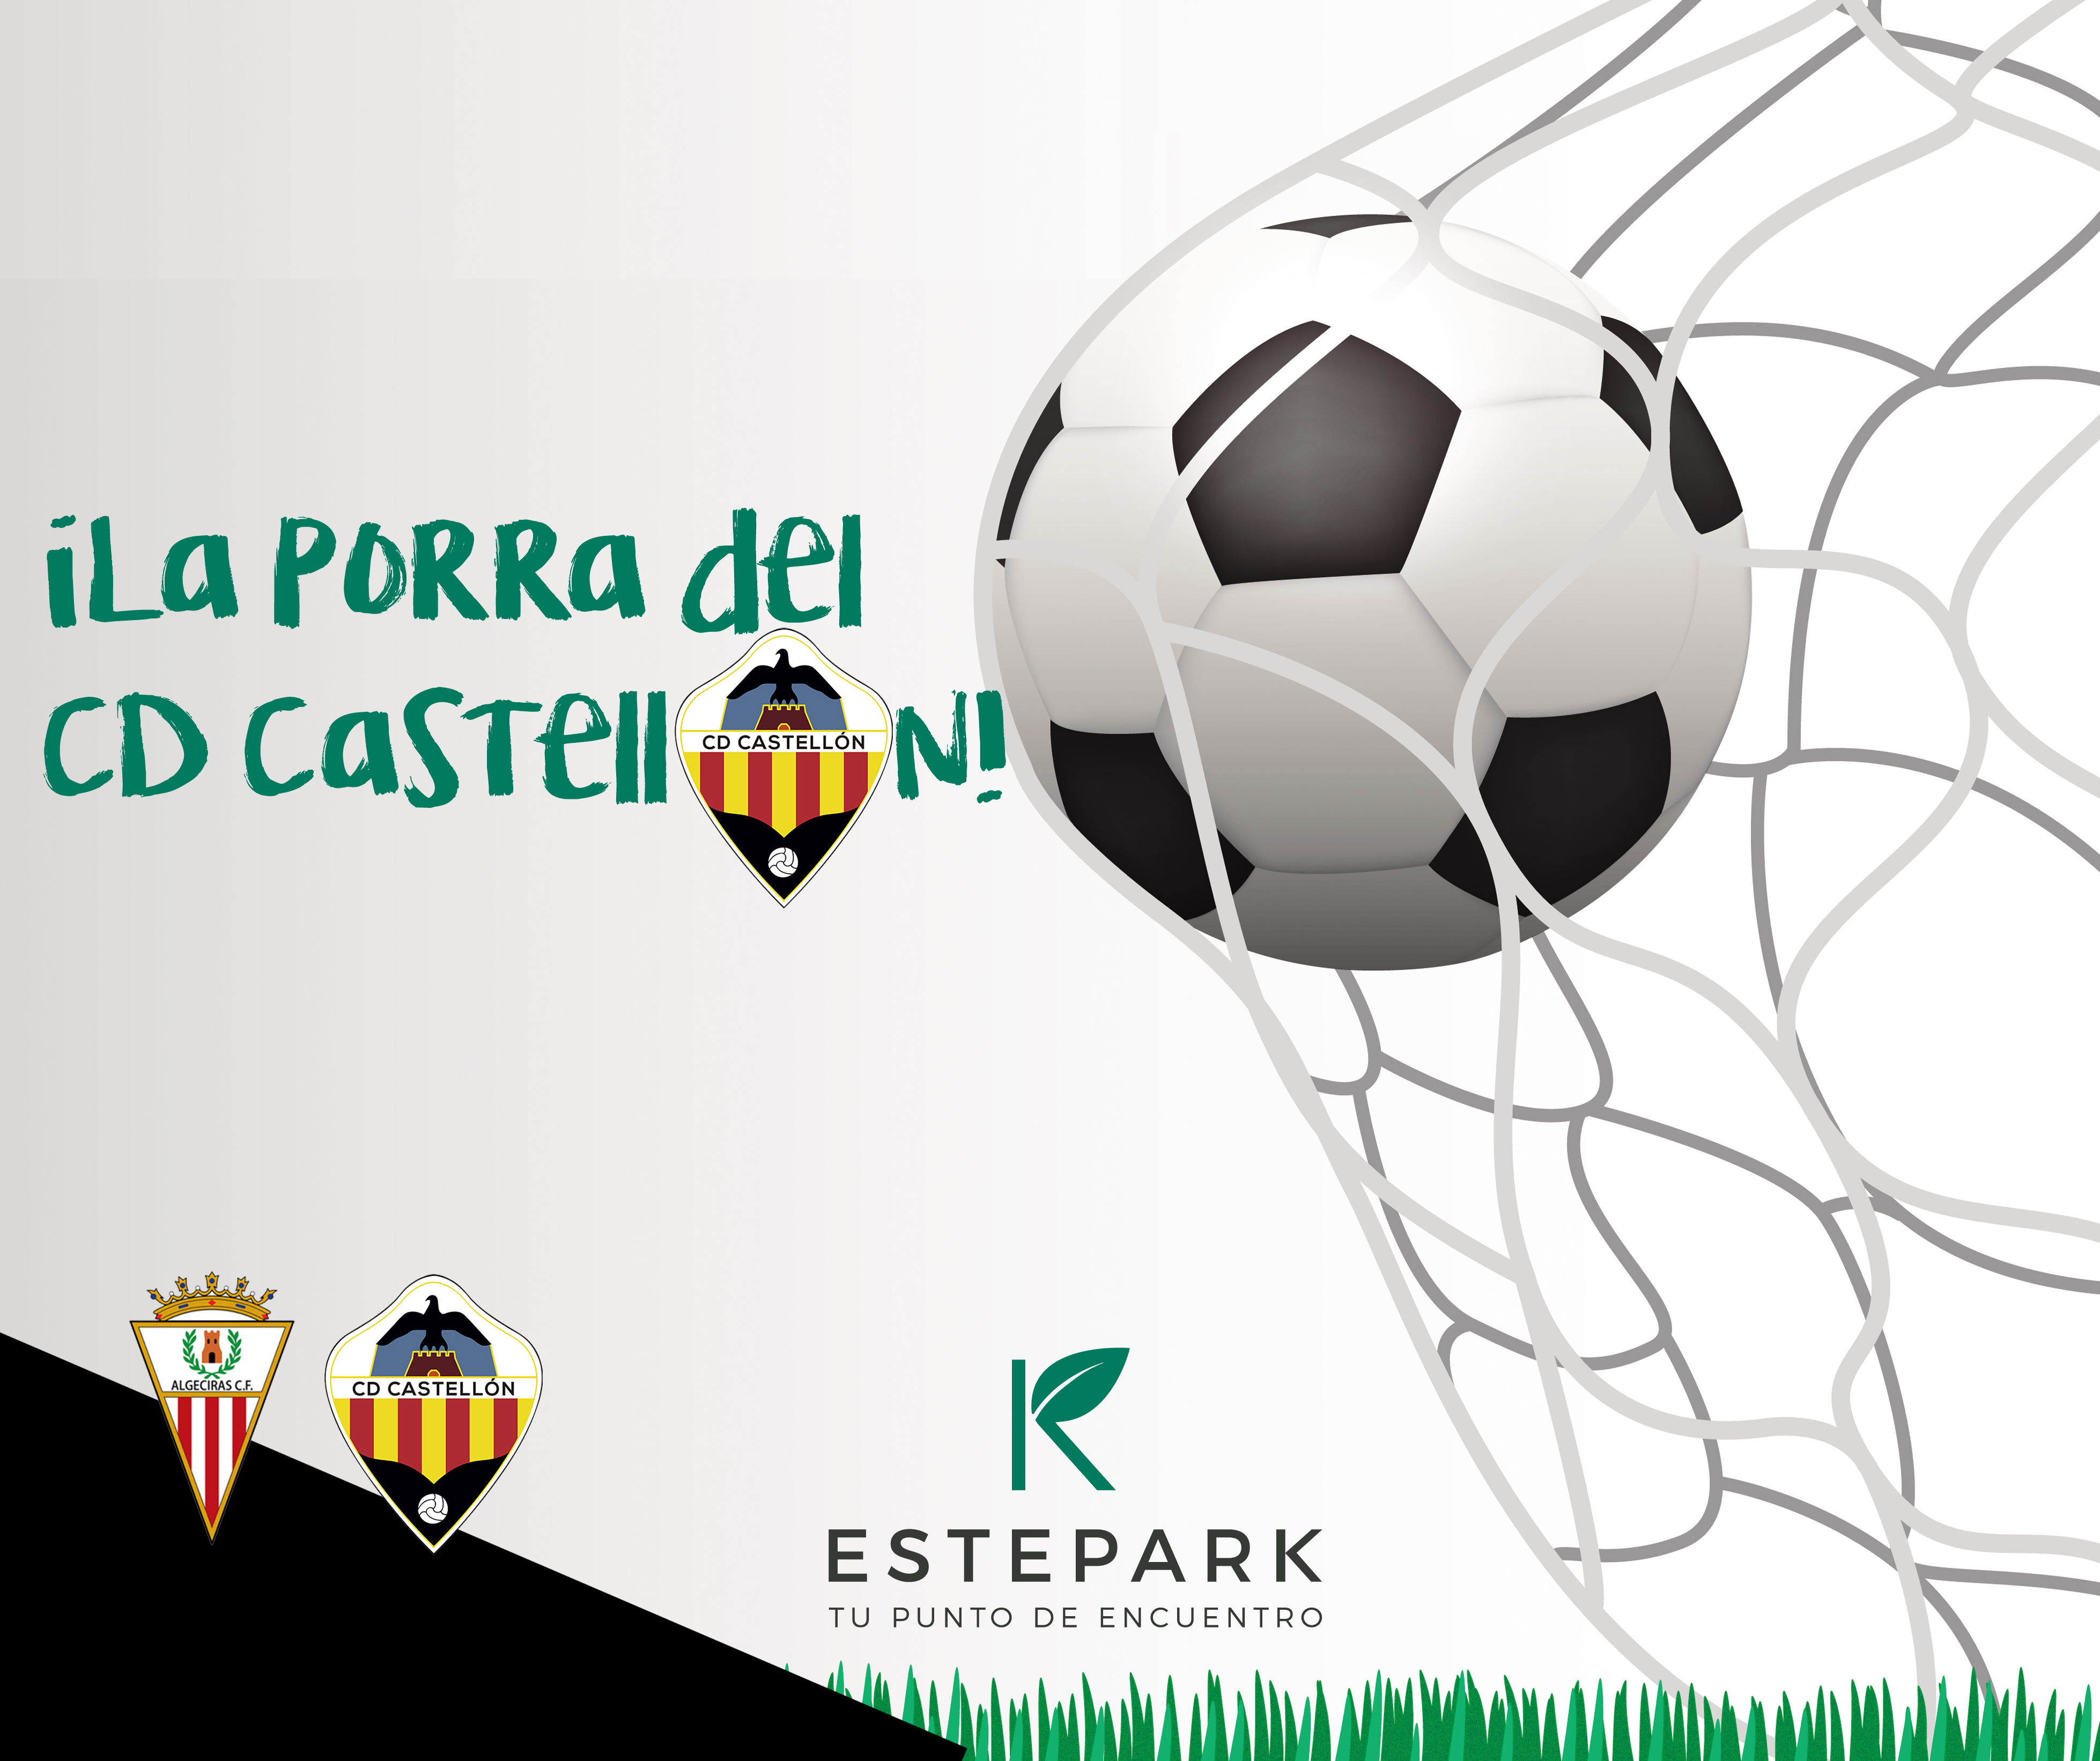 Porra de fútbol Estepark: RM Castilla VS. CD Castellón